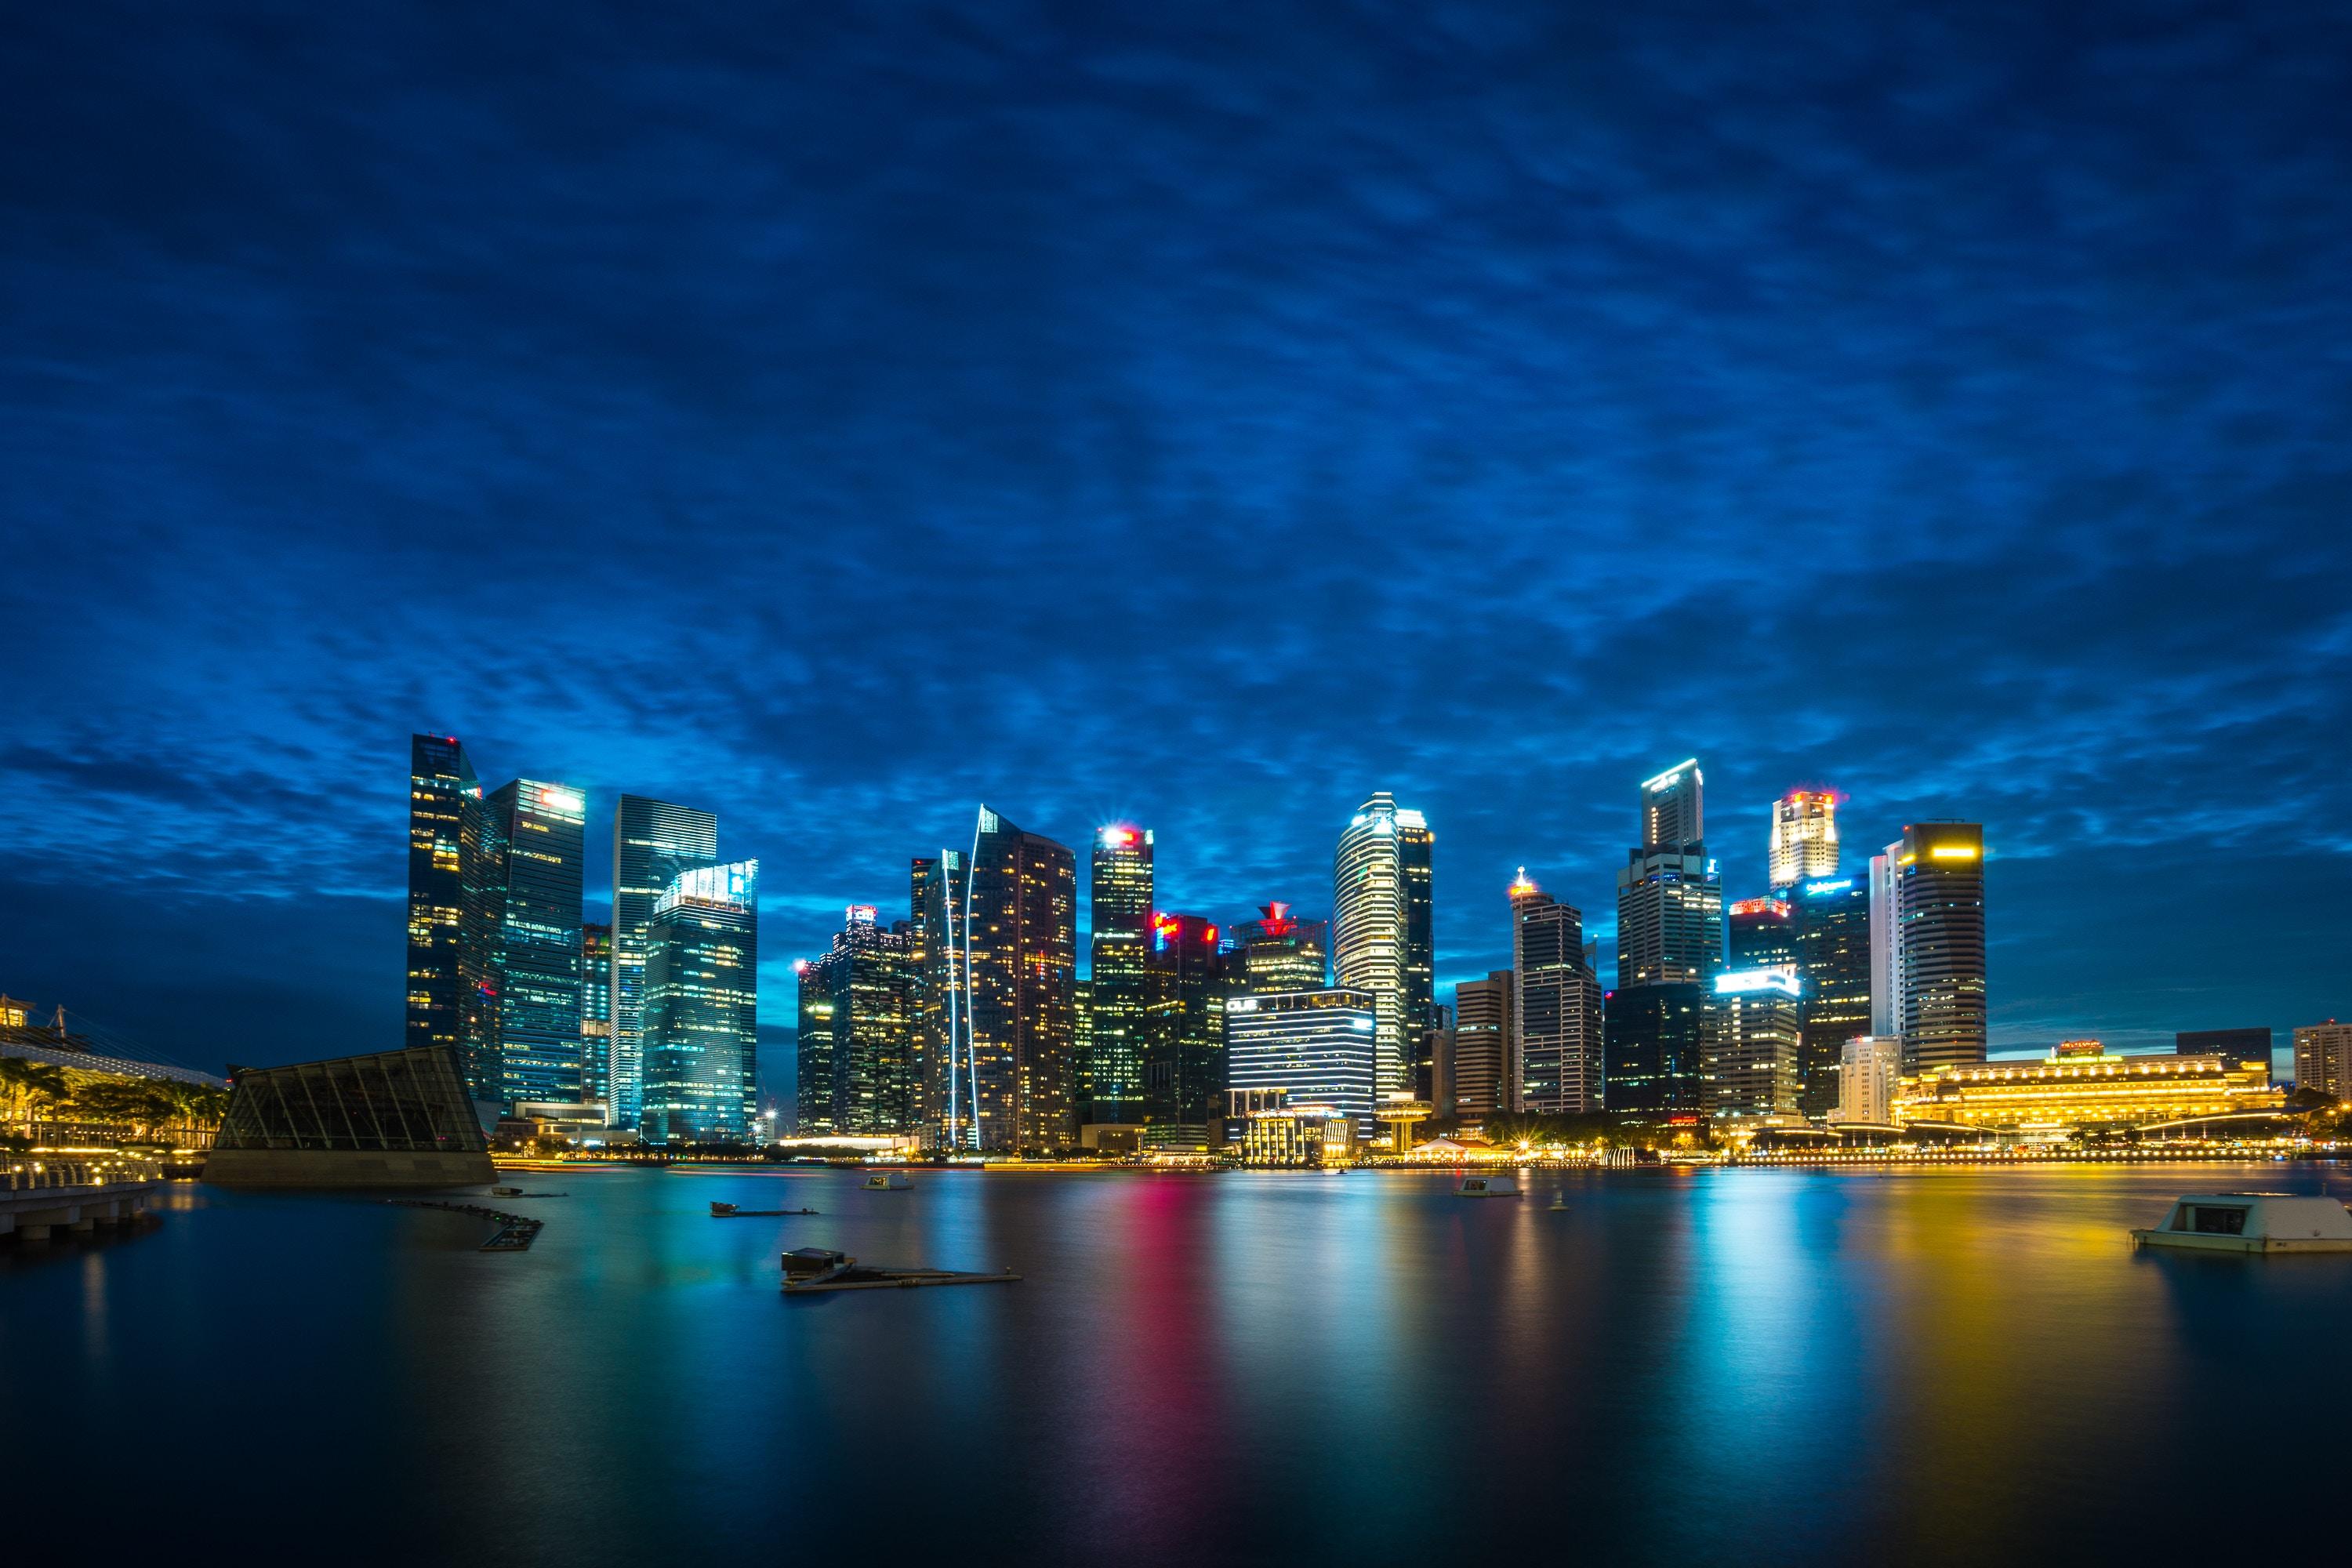 Singapore Night City Skyscrapers Panorama